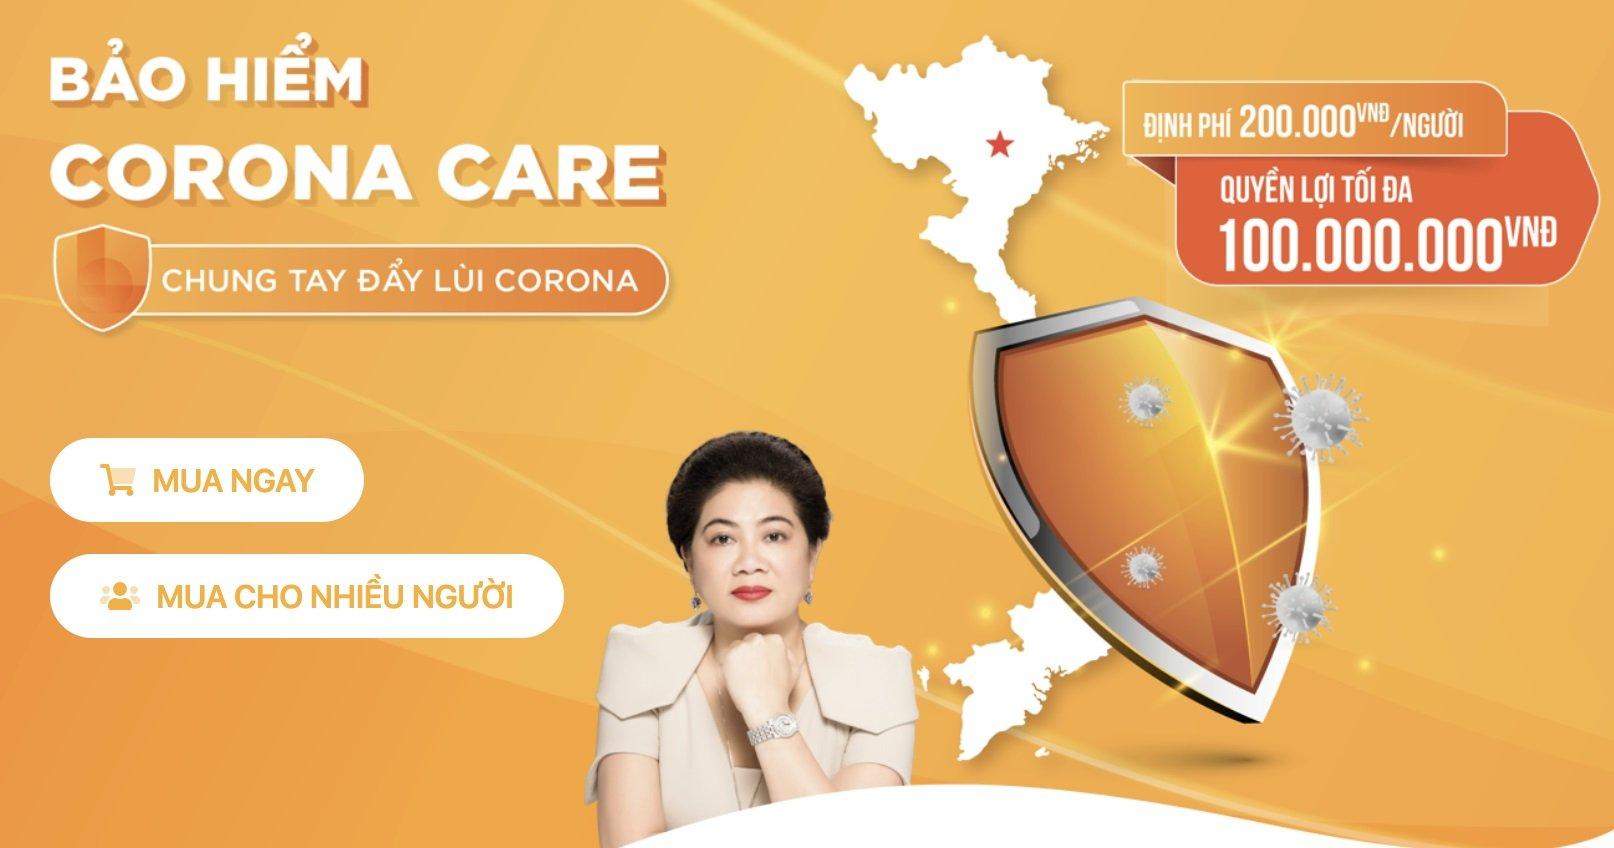 Bảo hiểm Corona Care : Bảo vệ gia đình bạn trong mùa dịch bệnh